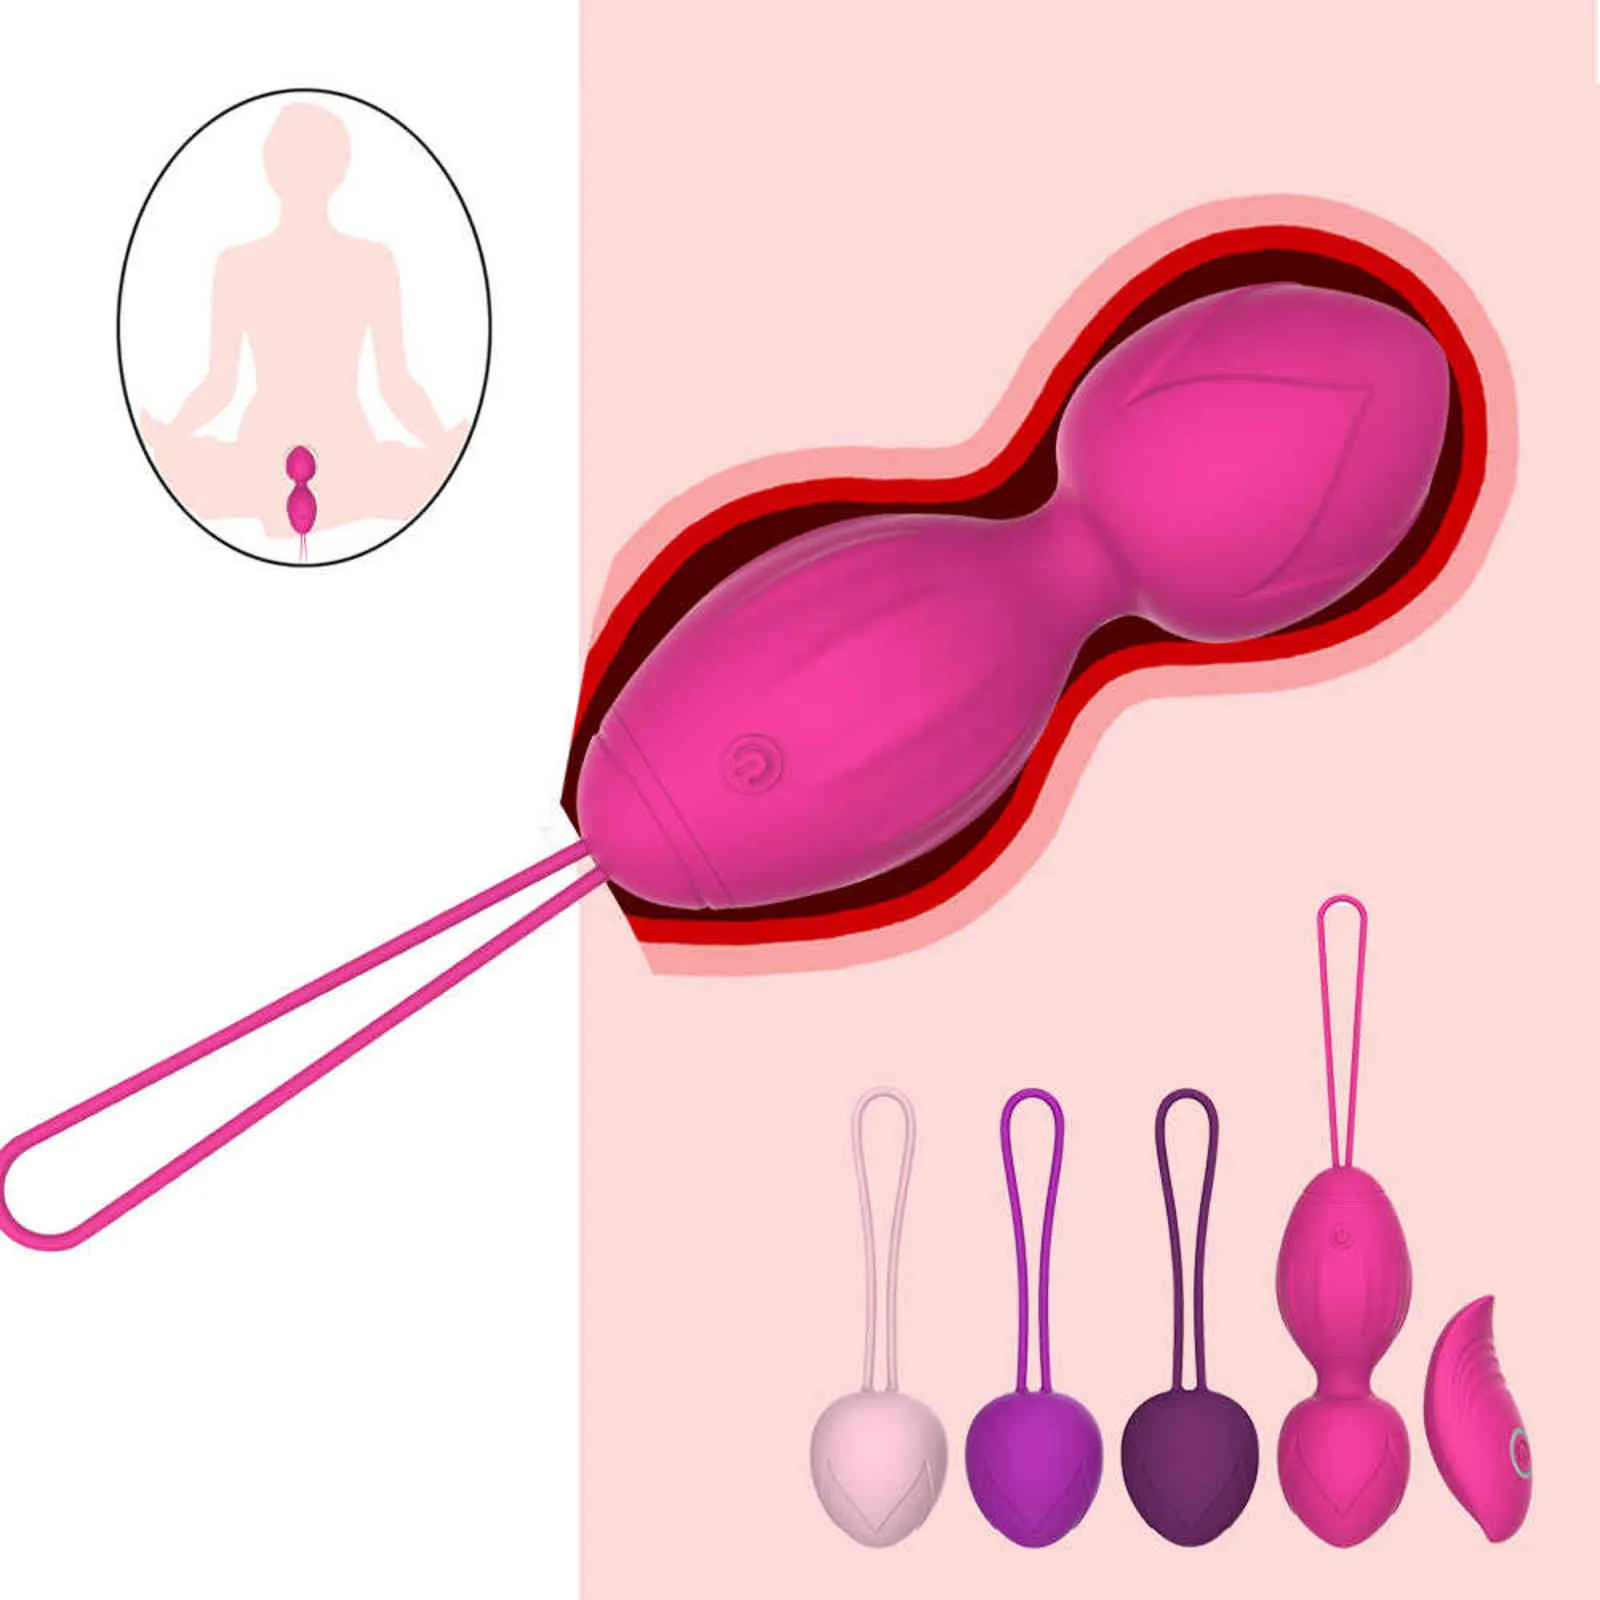 Ovos 4 pcs conjunto seguro silicone kegel bola brinquedos sexuais para mulher bolas vaginal Ben wa vagina aperto exercitador adulto produtos 1124